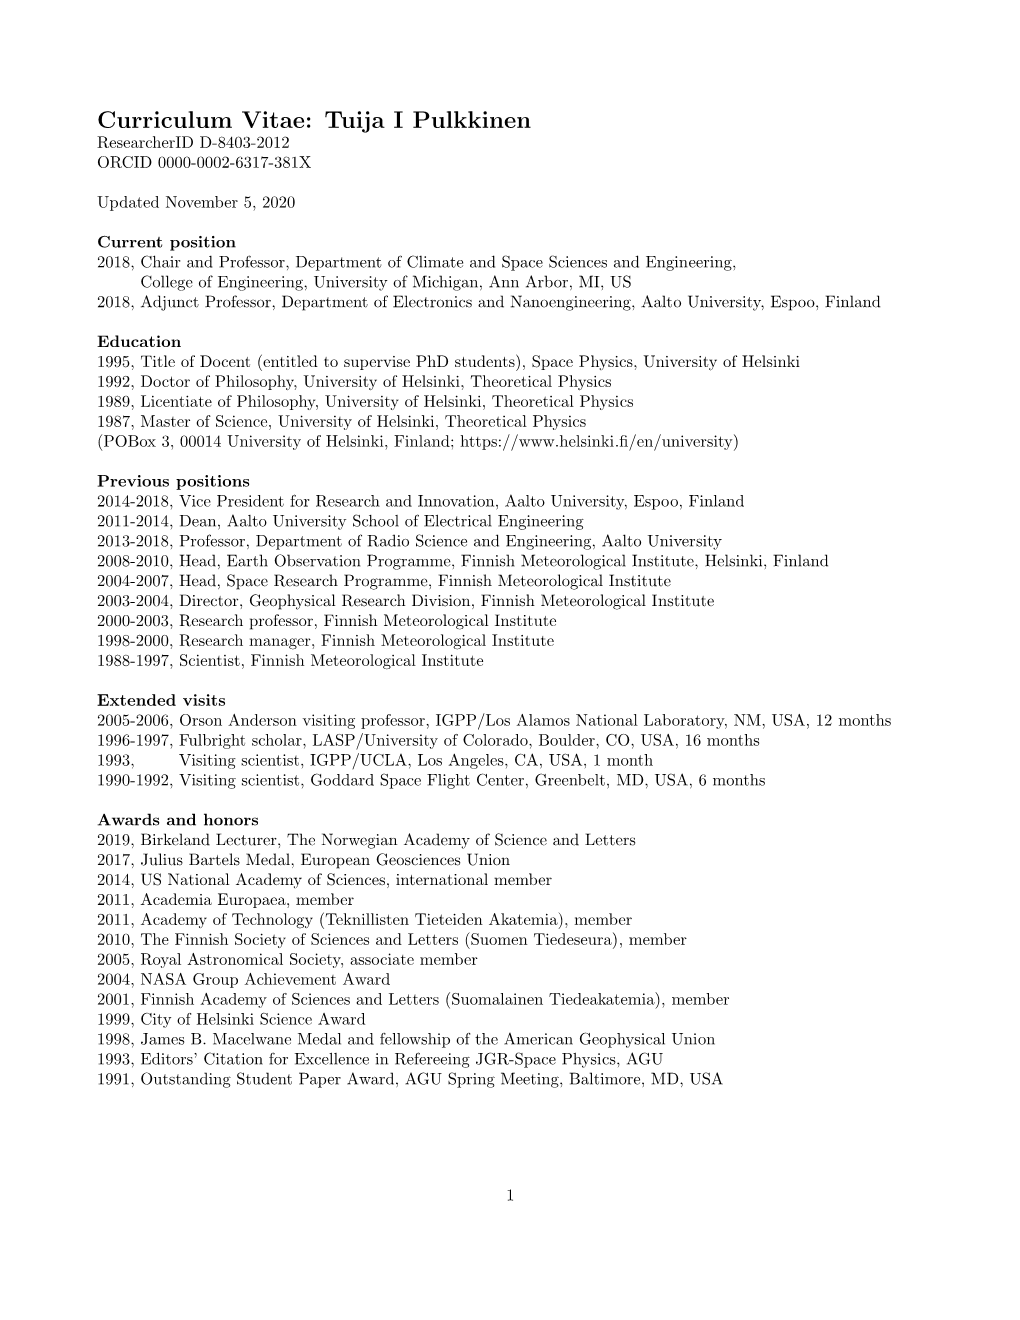 Curriculum Vitae: Tuija I Pulkkinen Researcherid D-8403-2012 ORCID 0000-0002-6317-381X